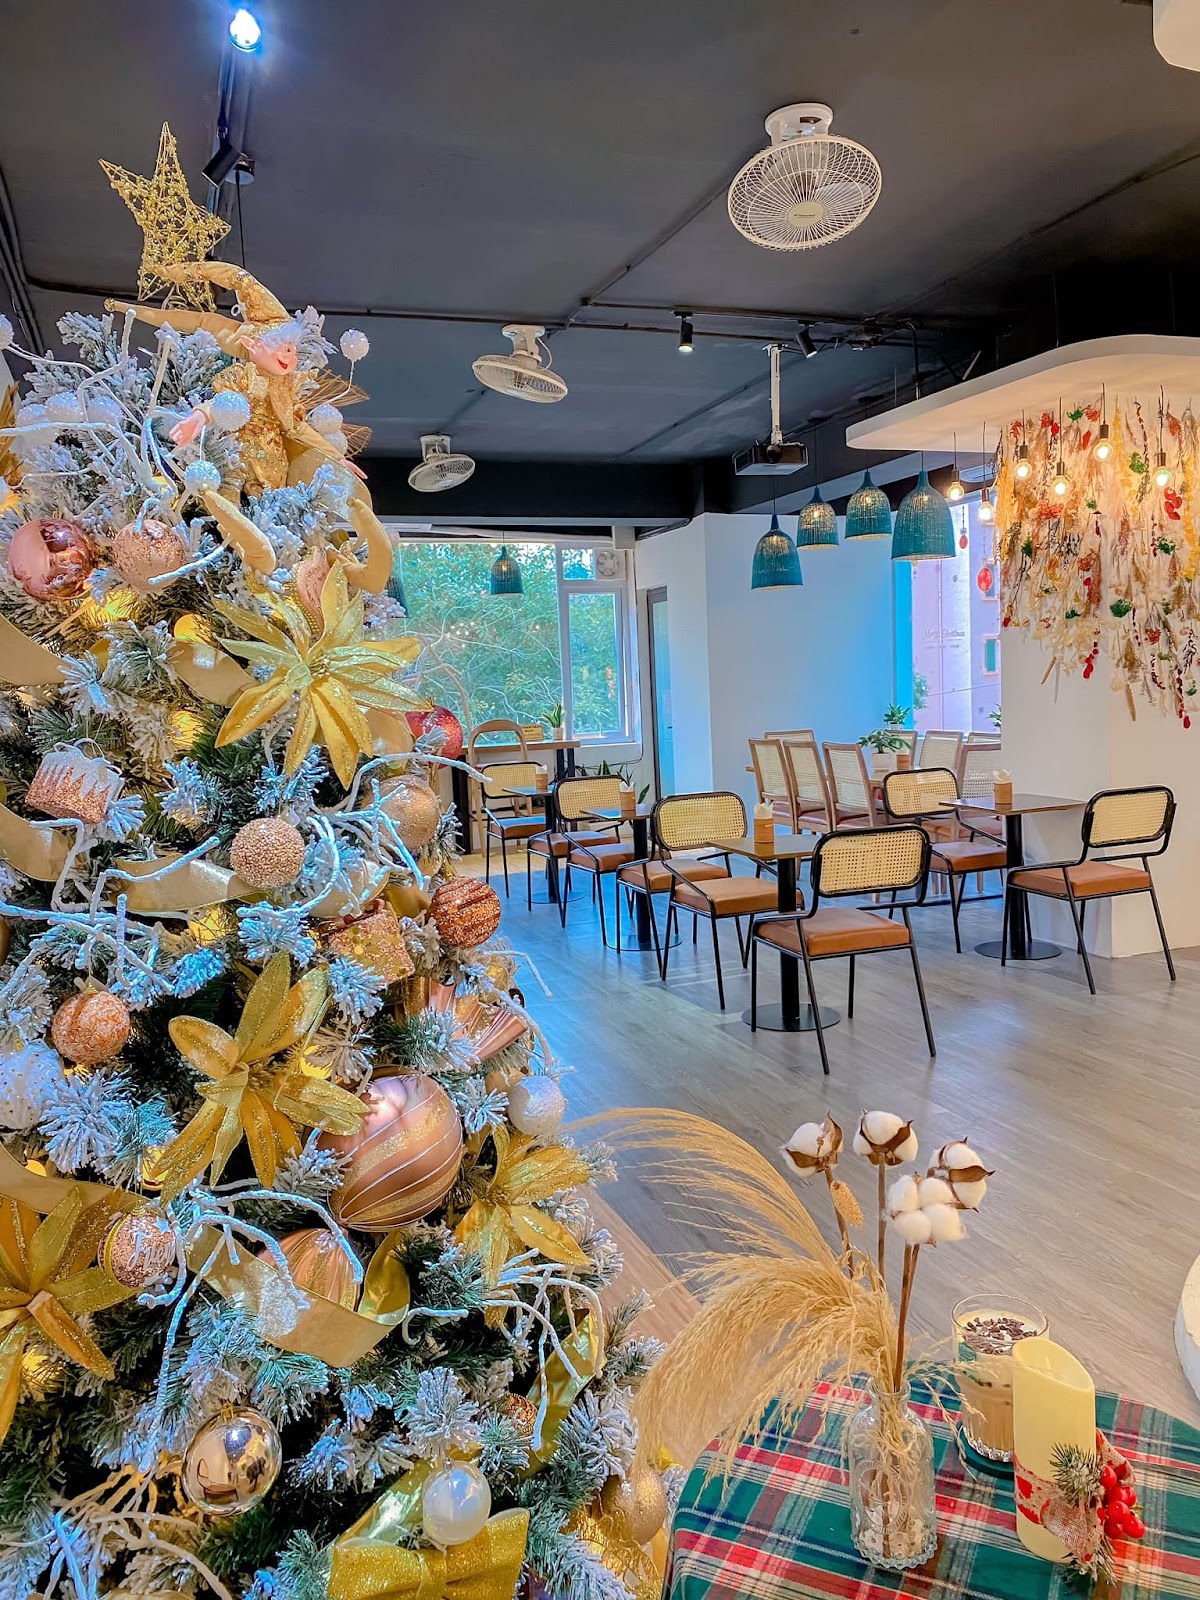 4 quán cà phê “sang-xịn” để tận hưởng không khí mùa Noel tại Hà Nội: Trang hoàng rực rỡ, không gian như trời Tây - Ảnh 2.